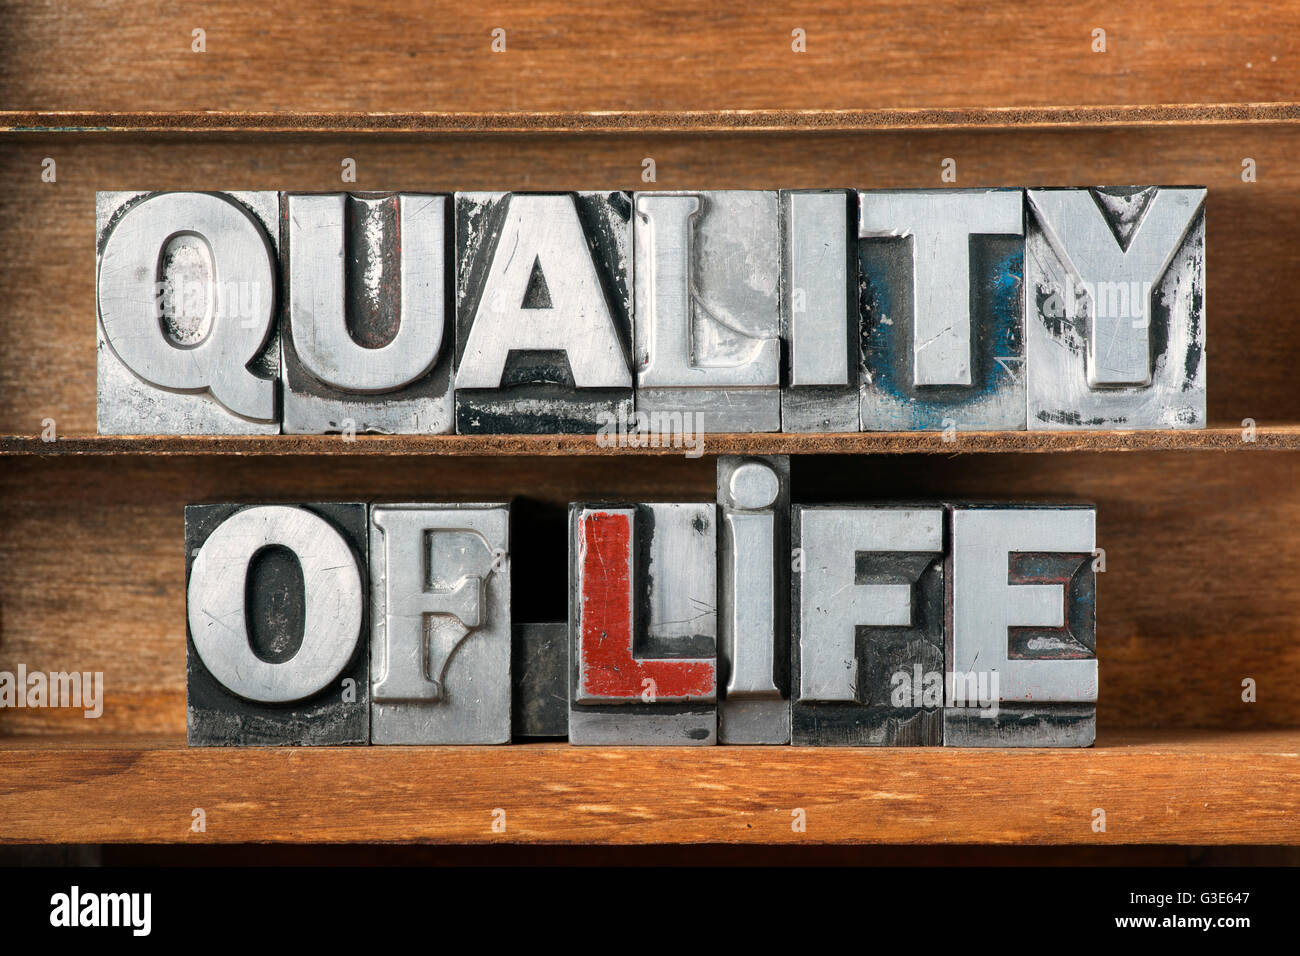 Calidad de vida frase hecha de tipografía metálica en bandeja de madera Foto de stock